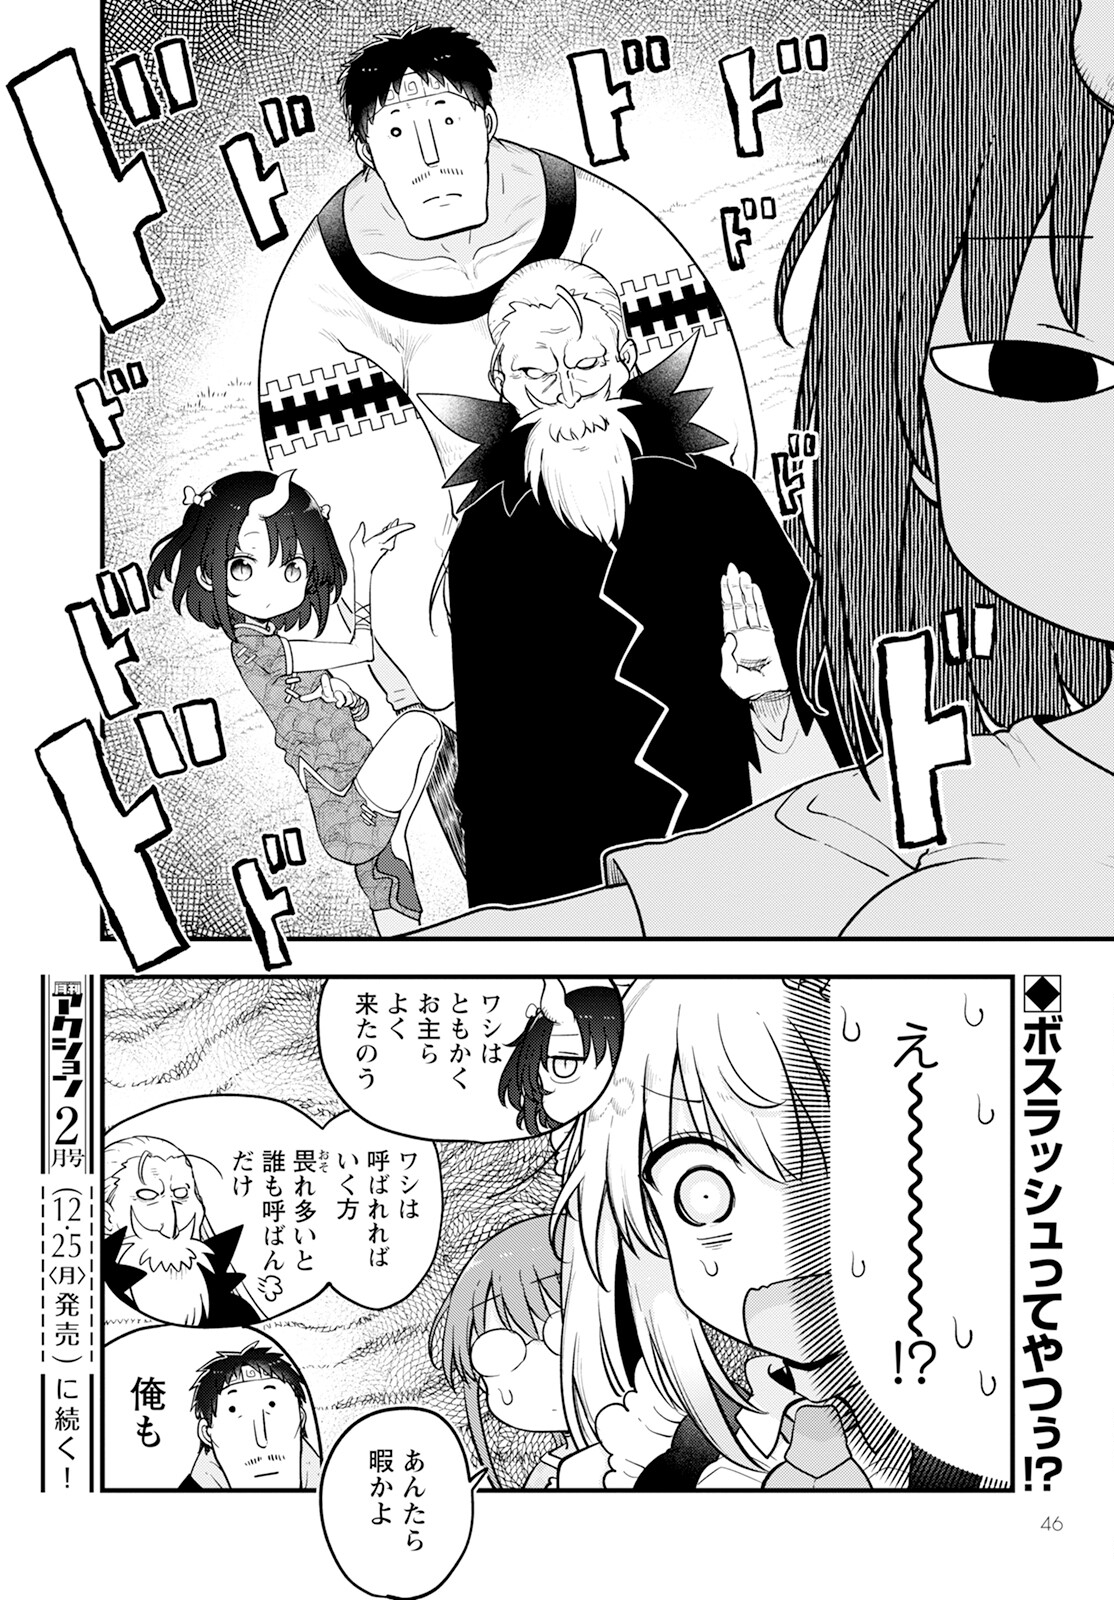 Kobayashi-san Chi no Maid Dragon - Chapter 138 - Page 14